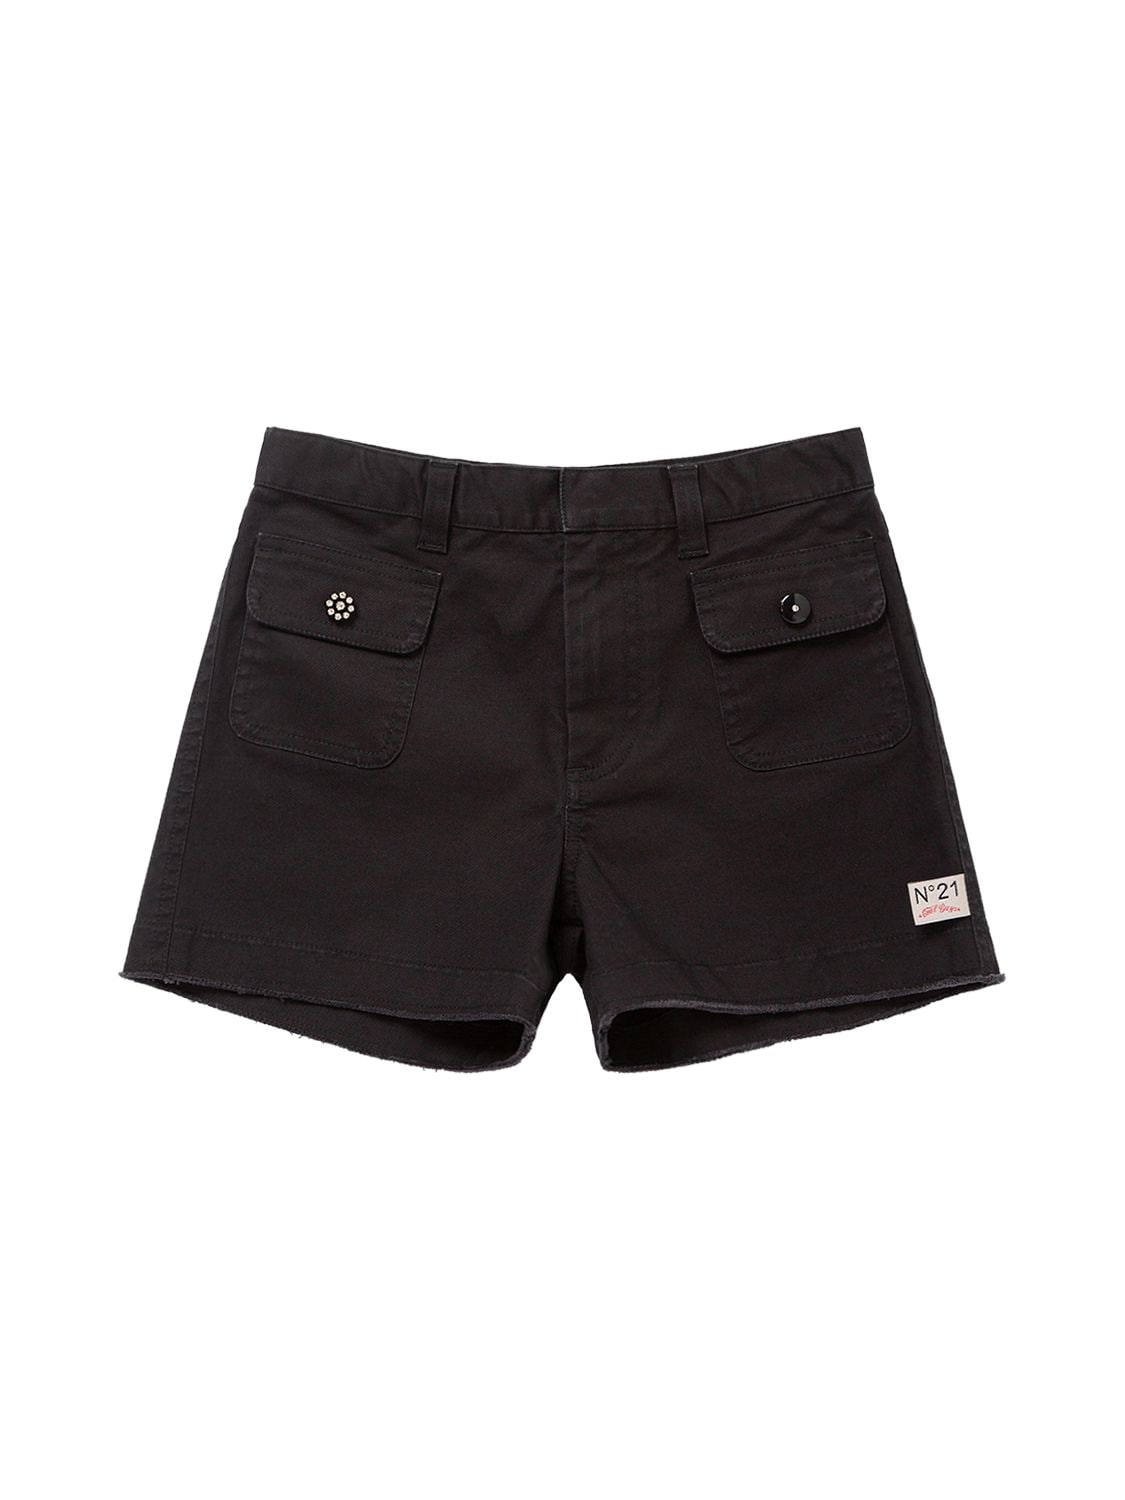 N°21 Kids' Cotton Blend Pocket Shorts In Black